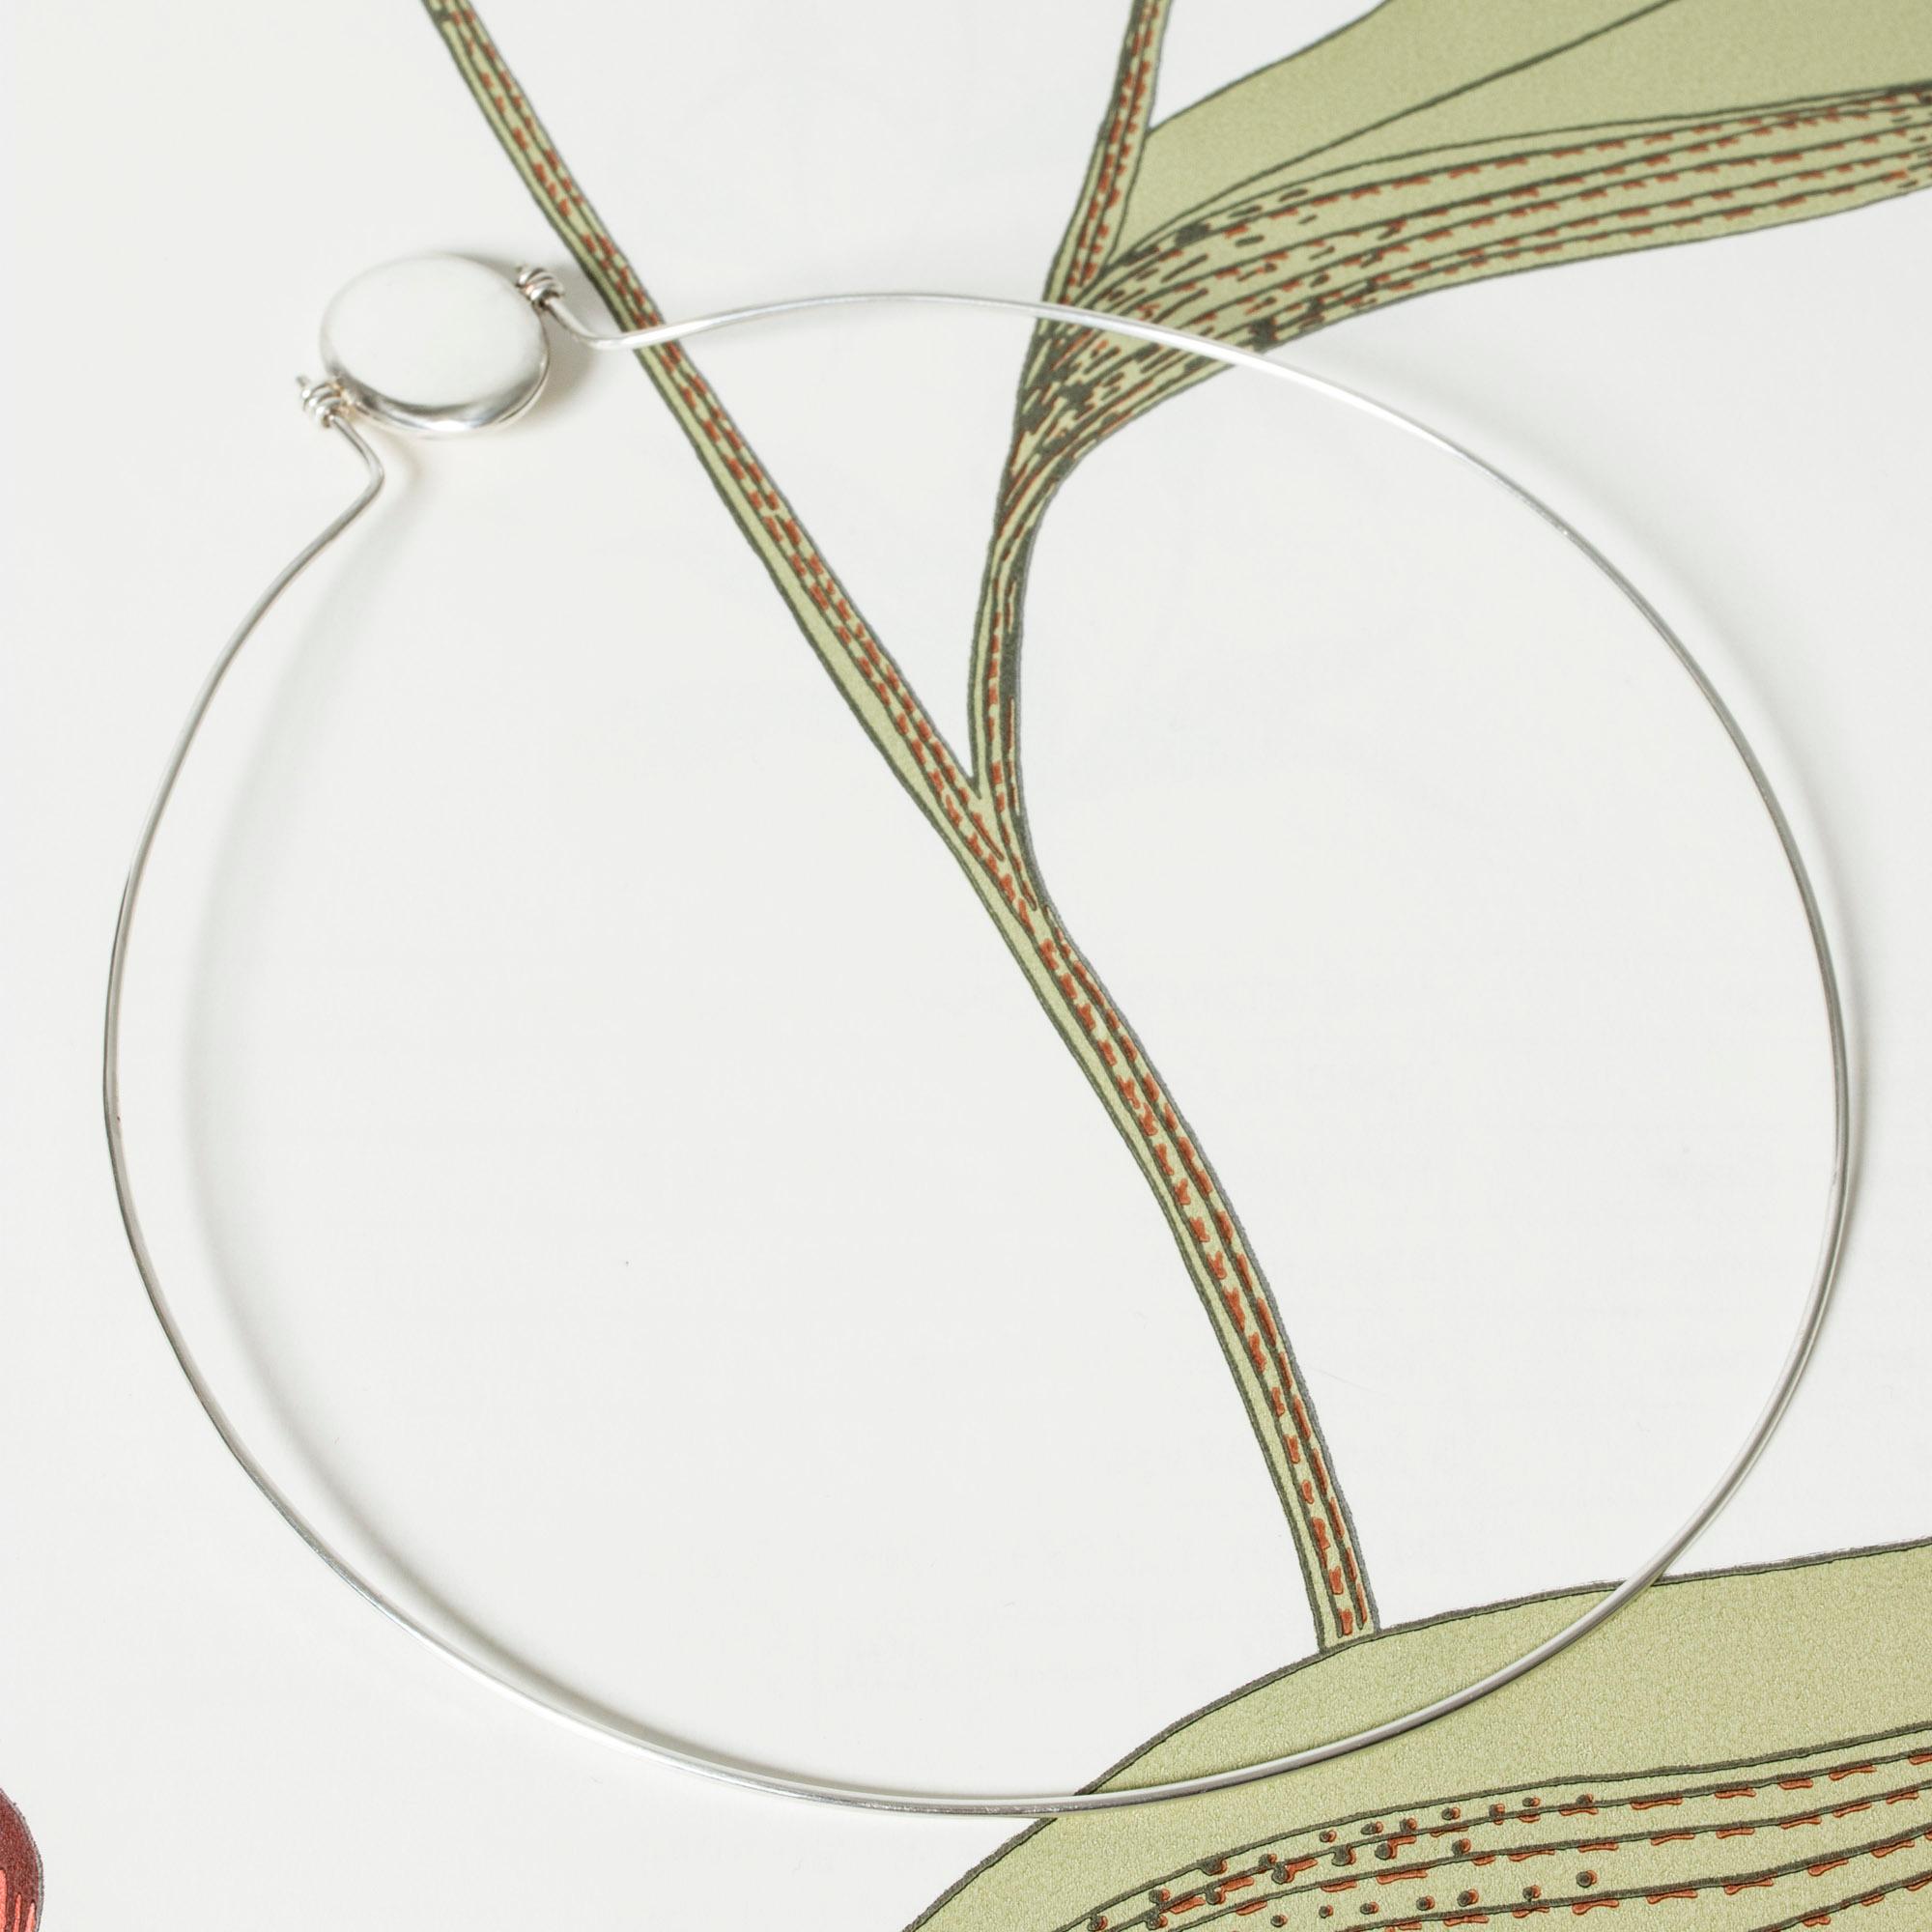 Sehr cooler silberner Halsring von Pekka Piekäinen, in einem glatten, minimalistischen Design. Das Oval in der Mitte ist ein Medaillon, das an der Seite elegant mit Bügeln verschlossen ist.